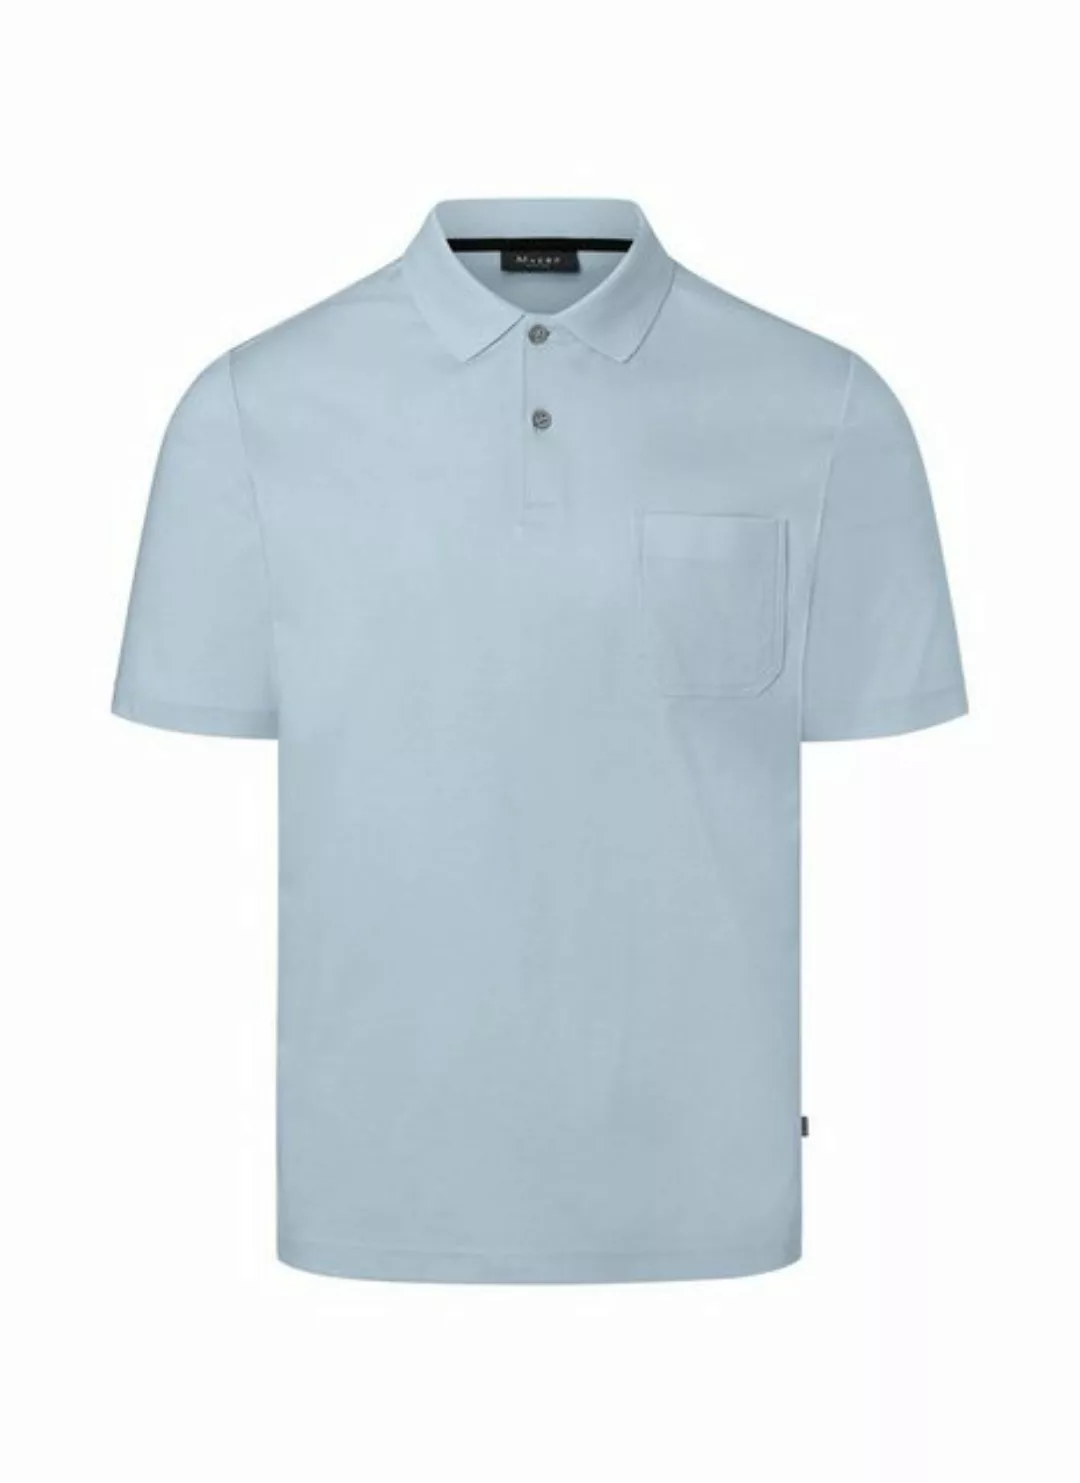 MAERZ Muenchen Poloshirt MAERZ Polo-Shirt hellblau merceresierte Baumwolle günstig online kaufen